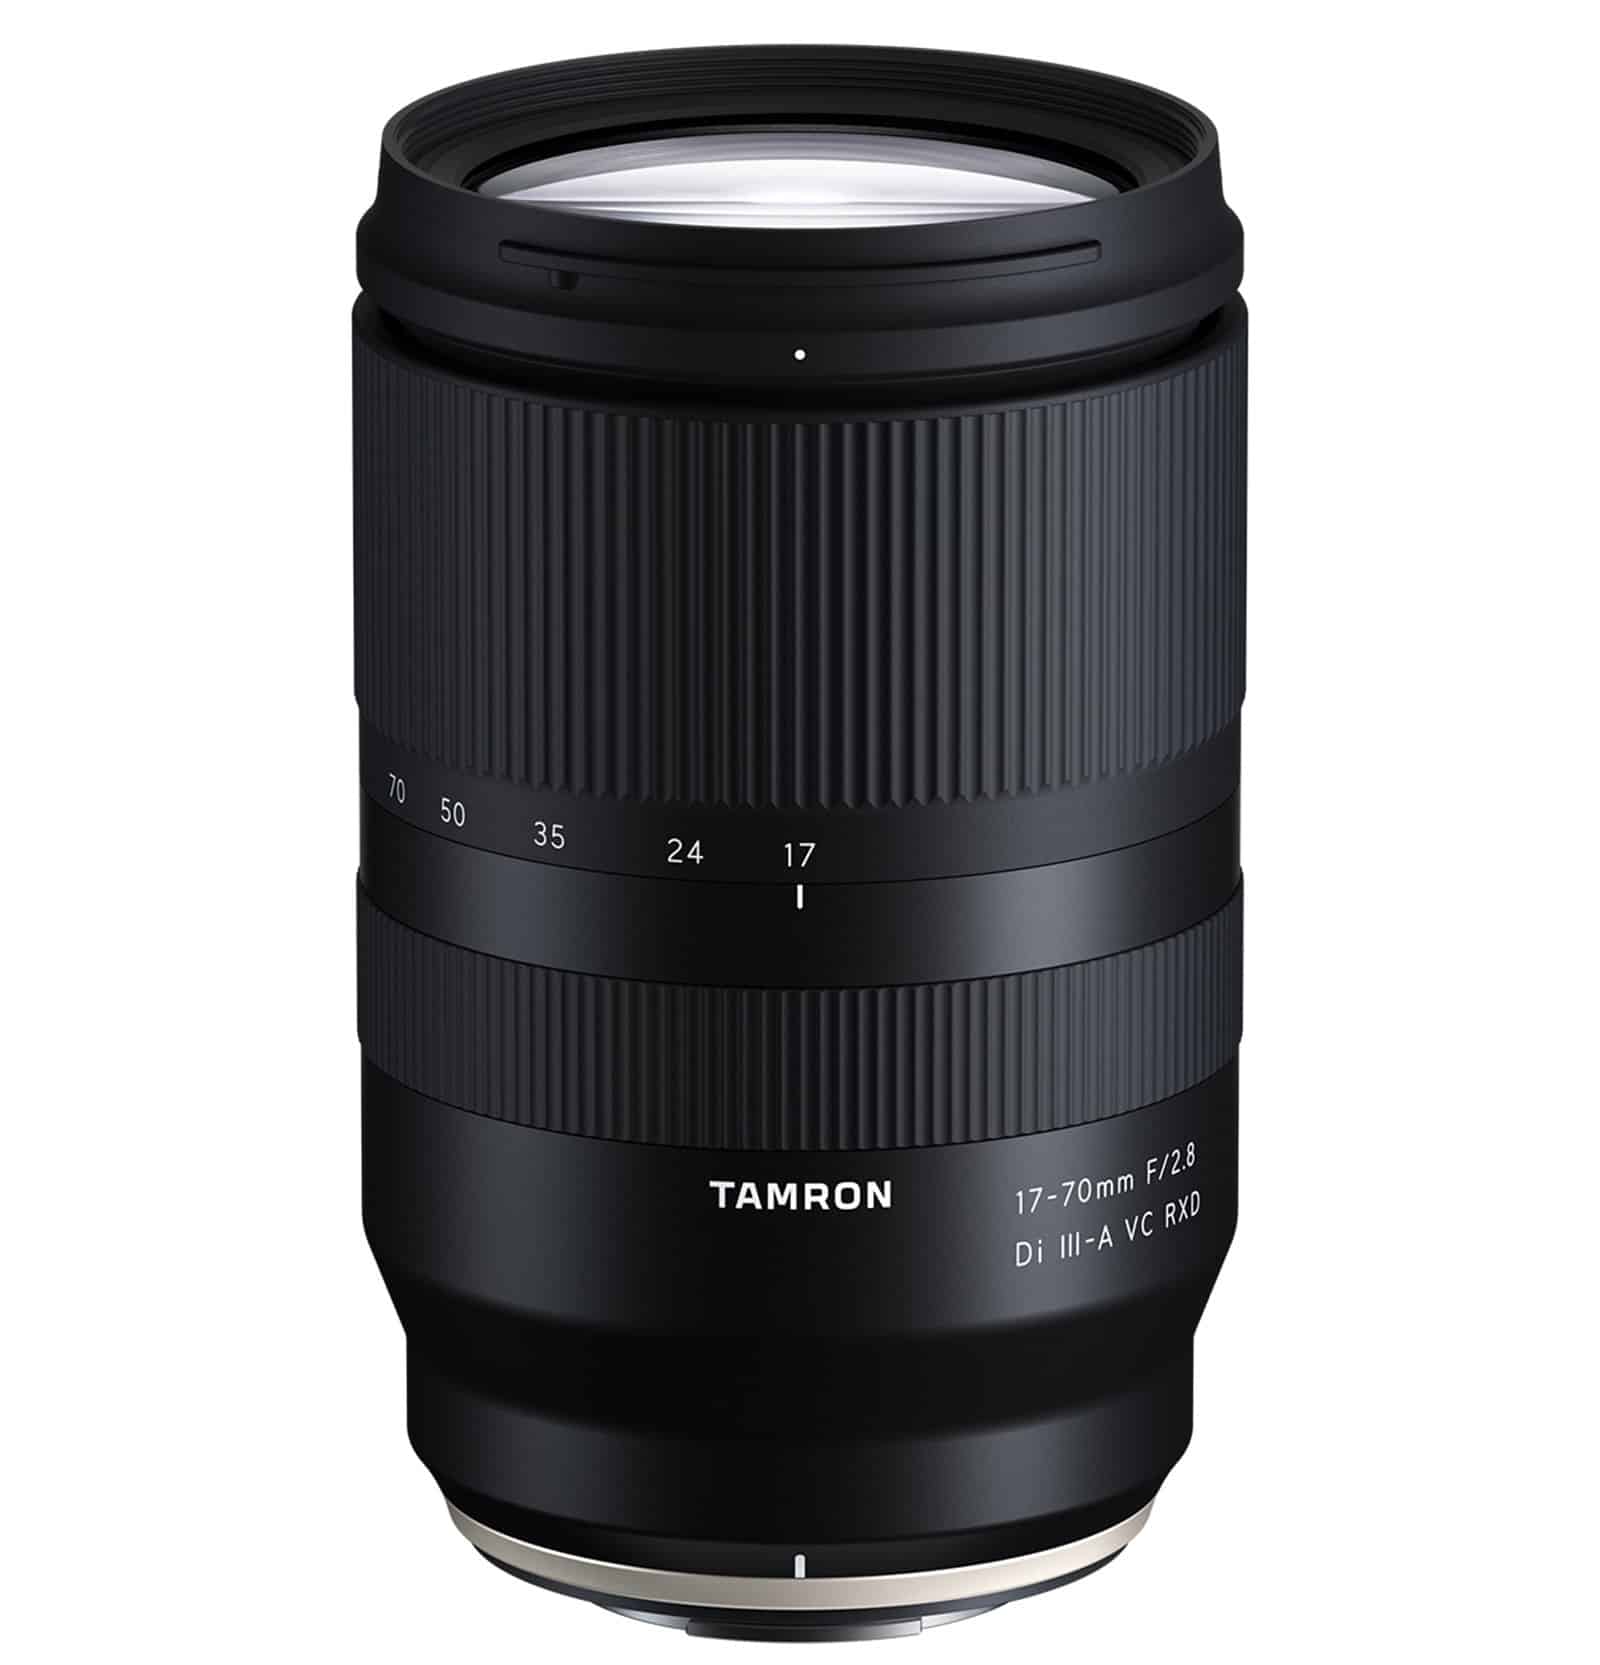 Tamron ra mắt ống kính 17-70mm F2.8 cho Fujifilm ngàm X